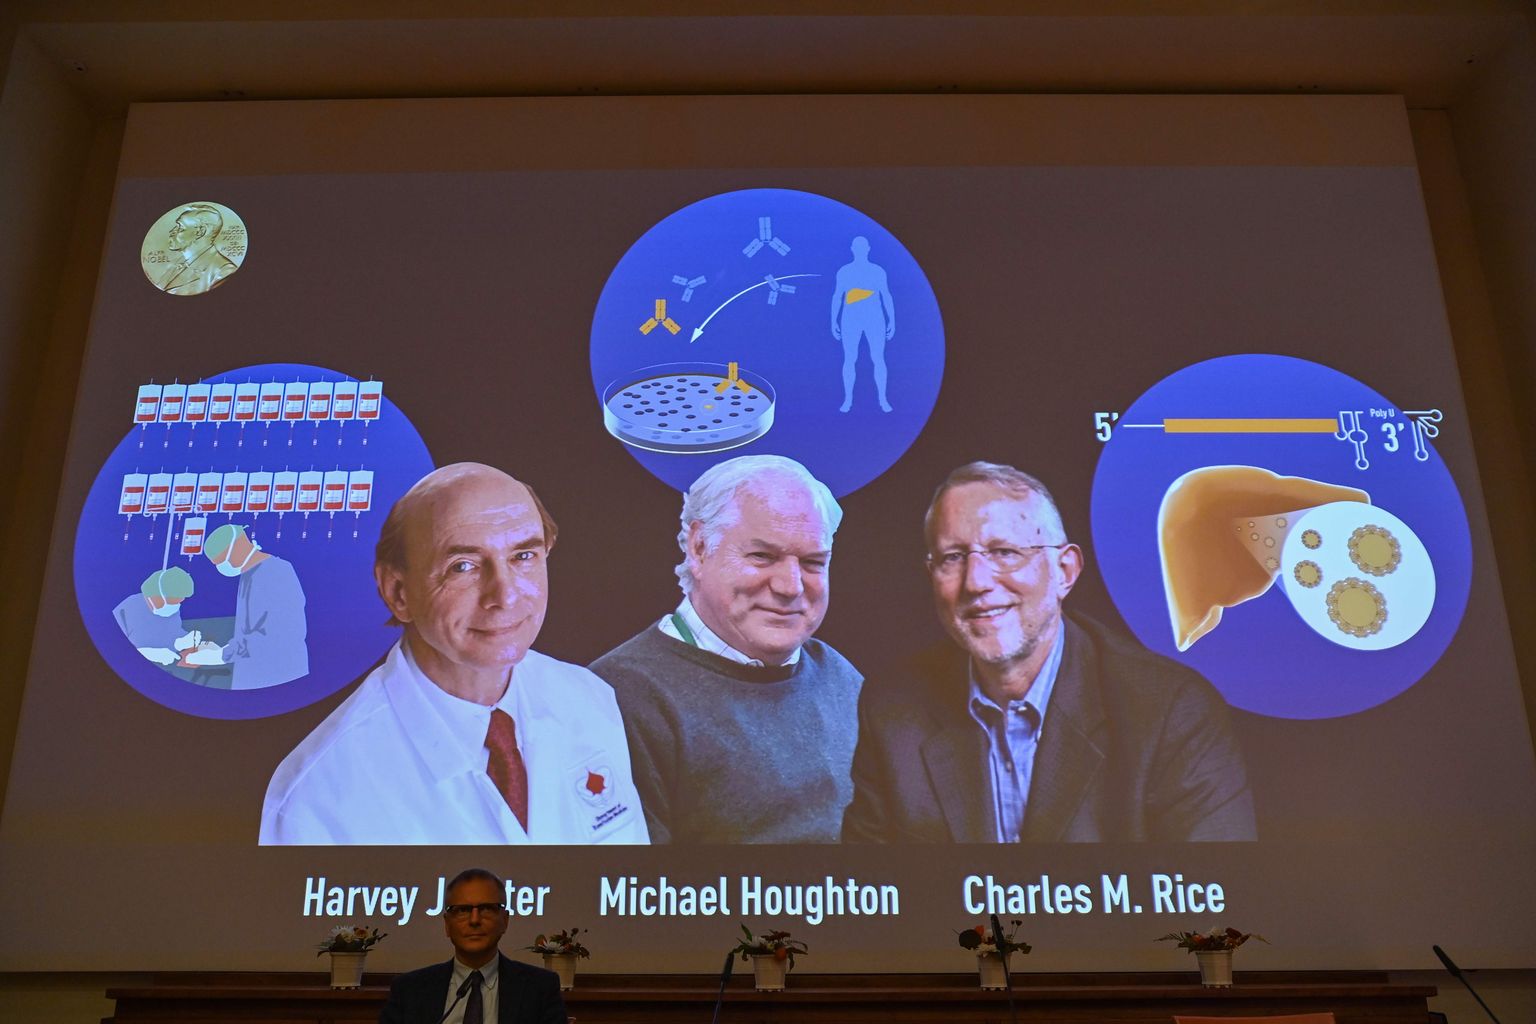 Täna pealelõunal teatas Rootsi Kuninglik Meditsiiniinstituut, et selle aasta meditsiini- või füsioloogia Nobeli preemia laureaadid on C hepatiidi viiruse avastajad Harvey J. Alter, Michael Houghton ja Charles M. Rice.